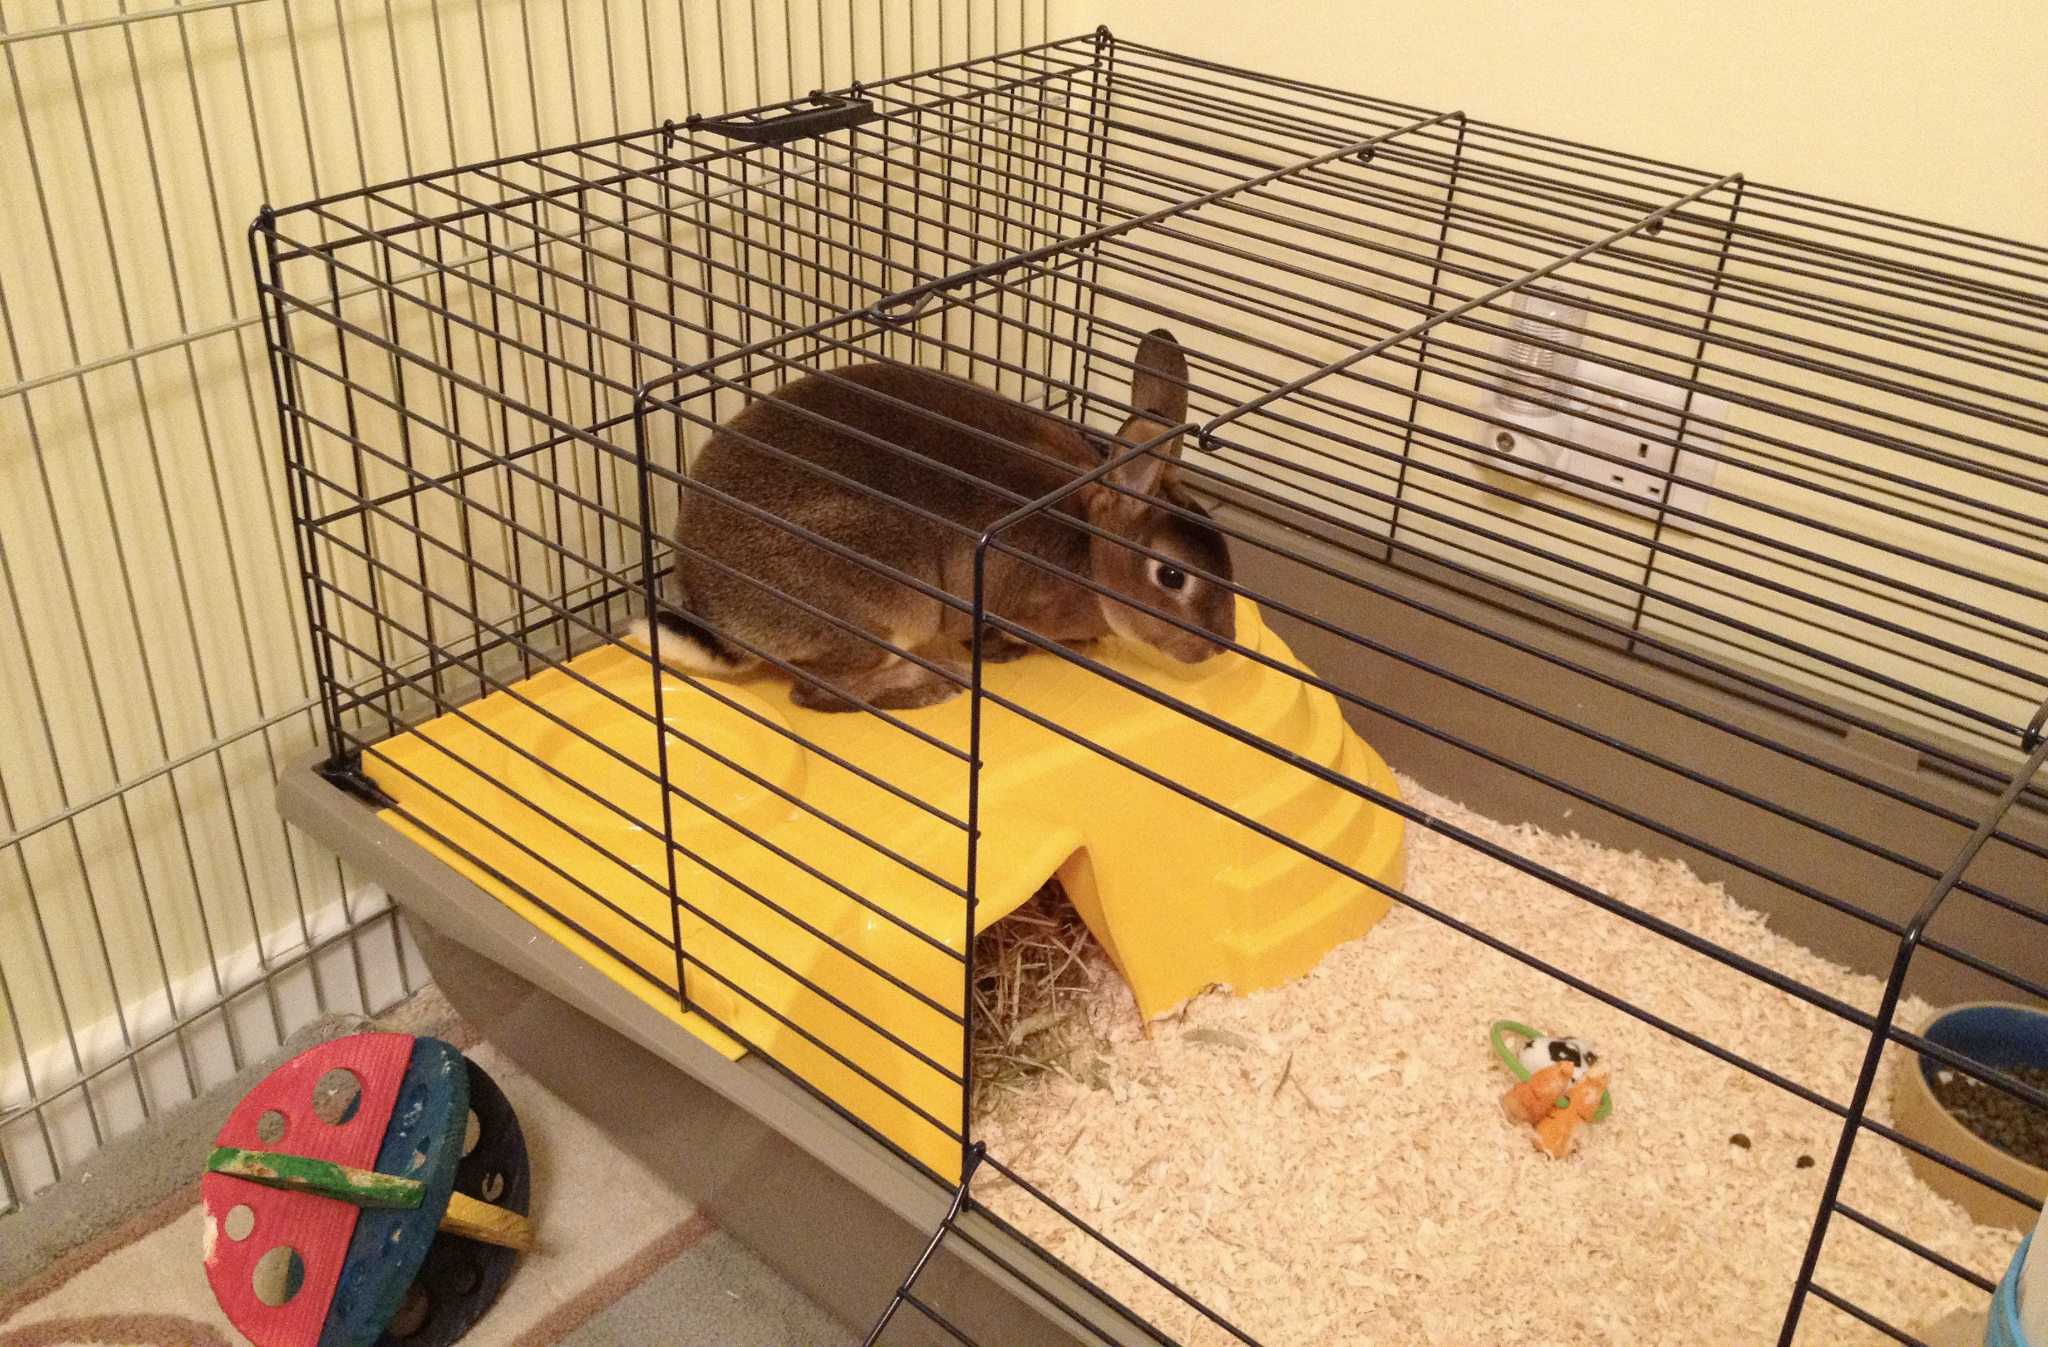 Как ухаживать за кроликами; уход и содержание декоративных кроликов в домашних условиях.